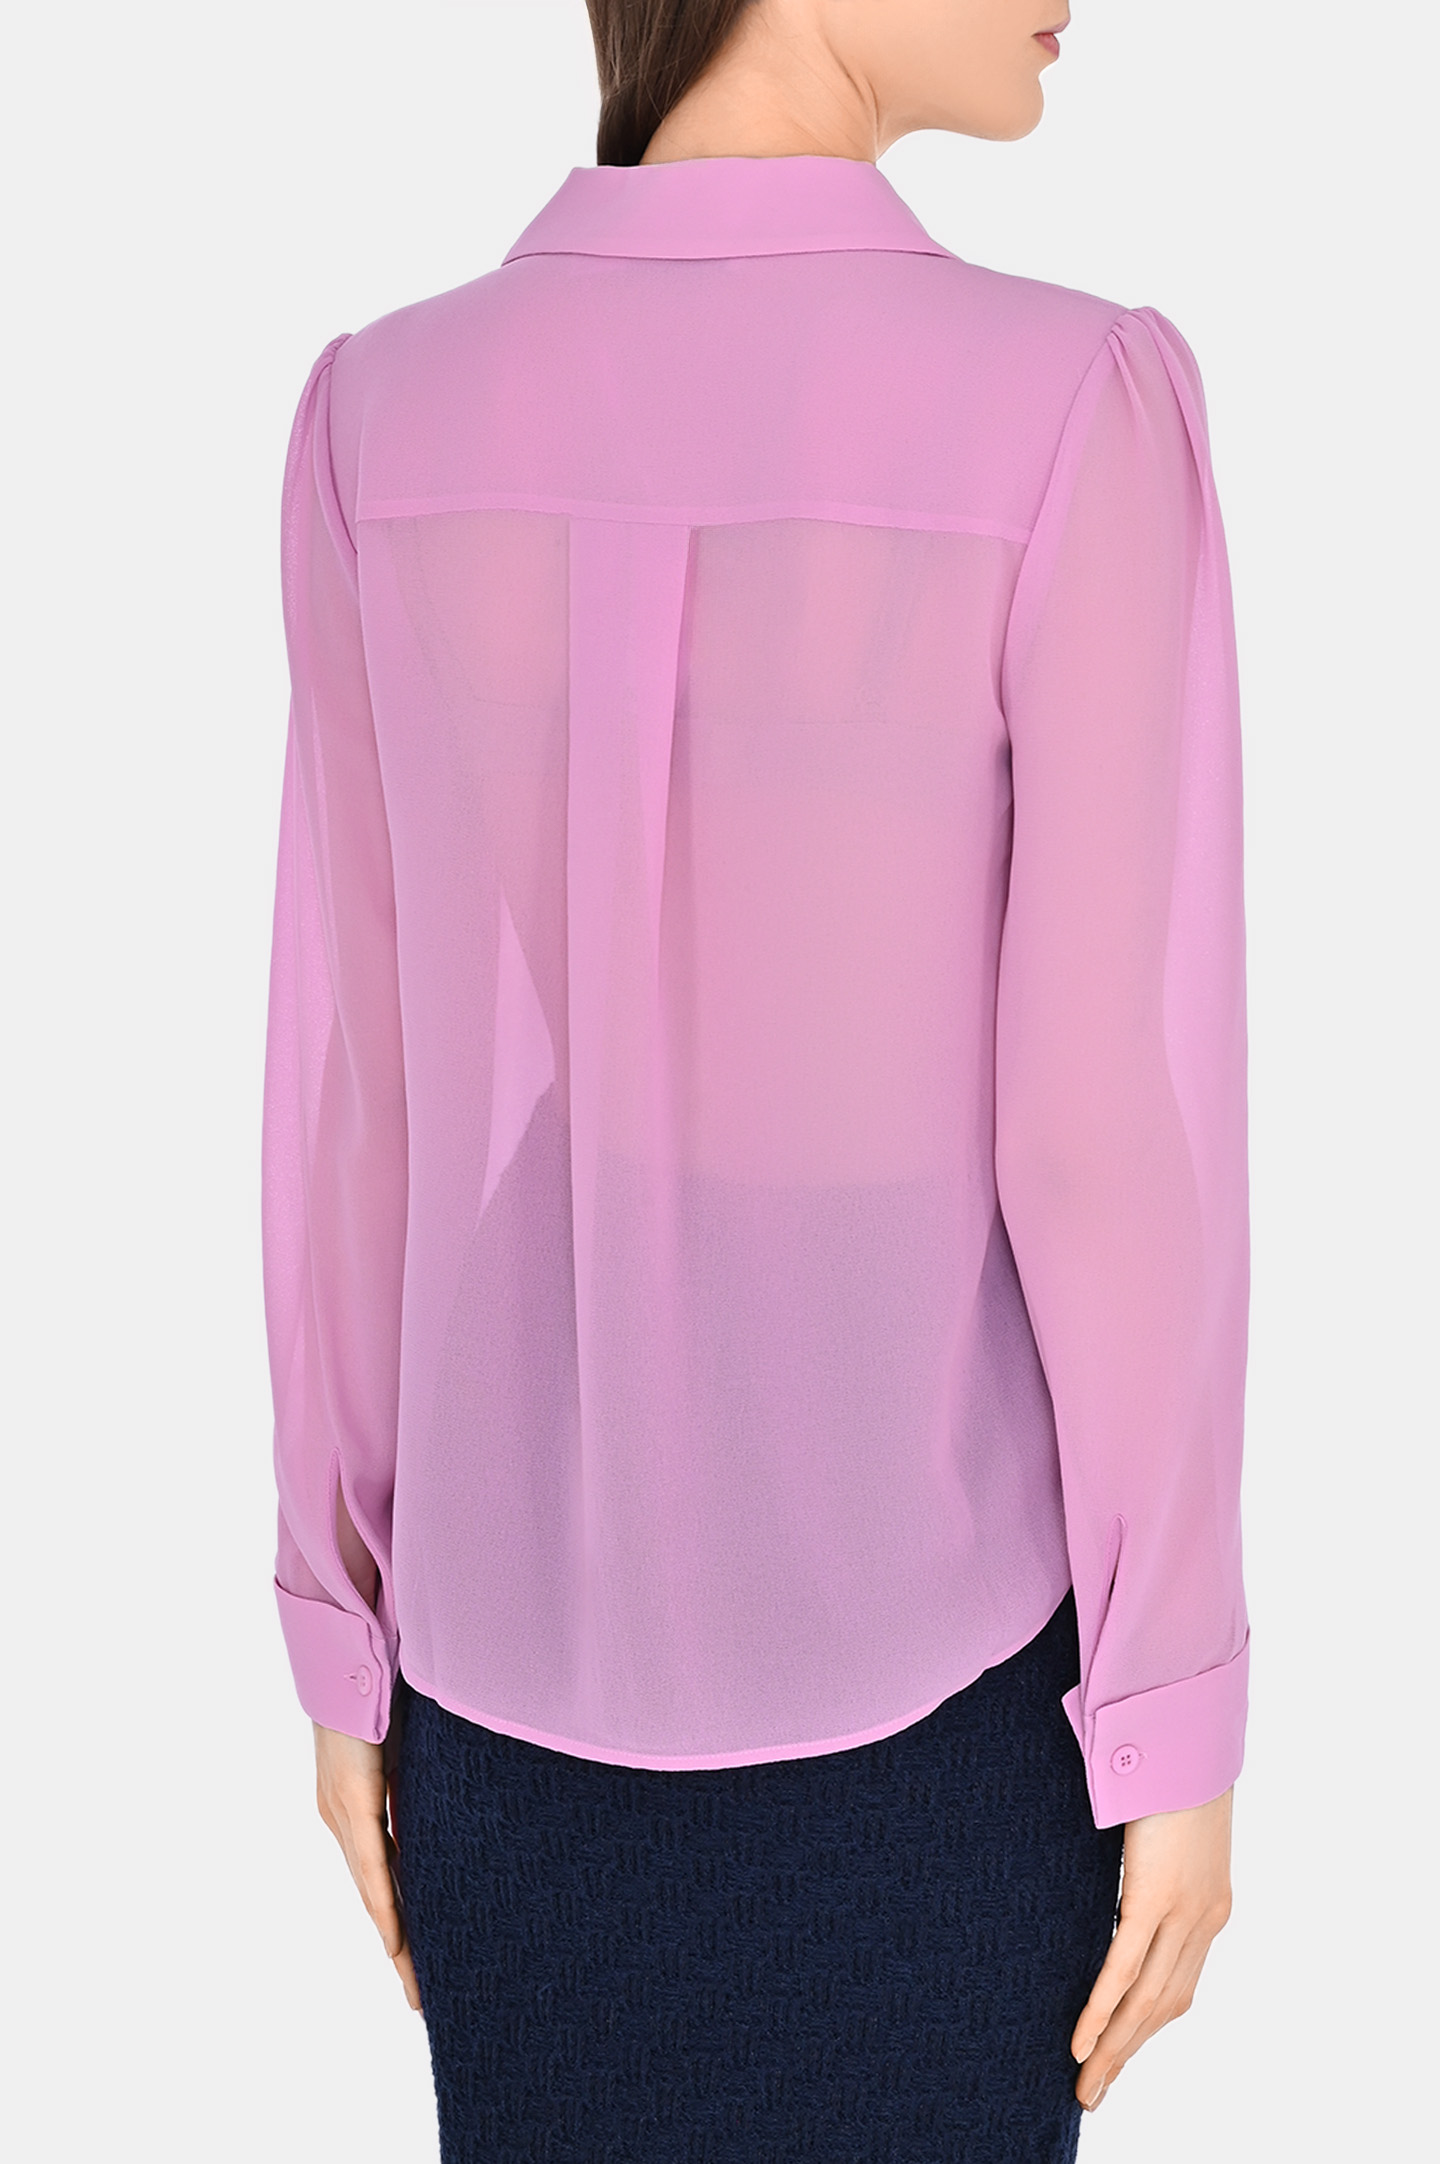 Блуза полупрозрачная с плиссировкой SELF PORTRAIT RS24034TP, цвет: Розовый, Женский